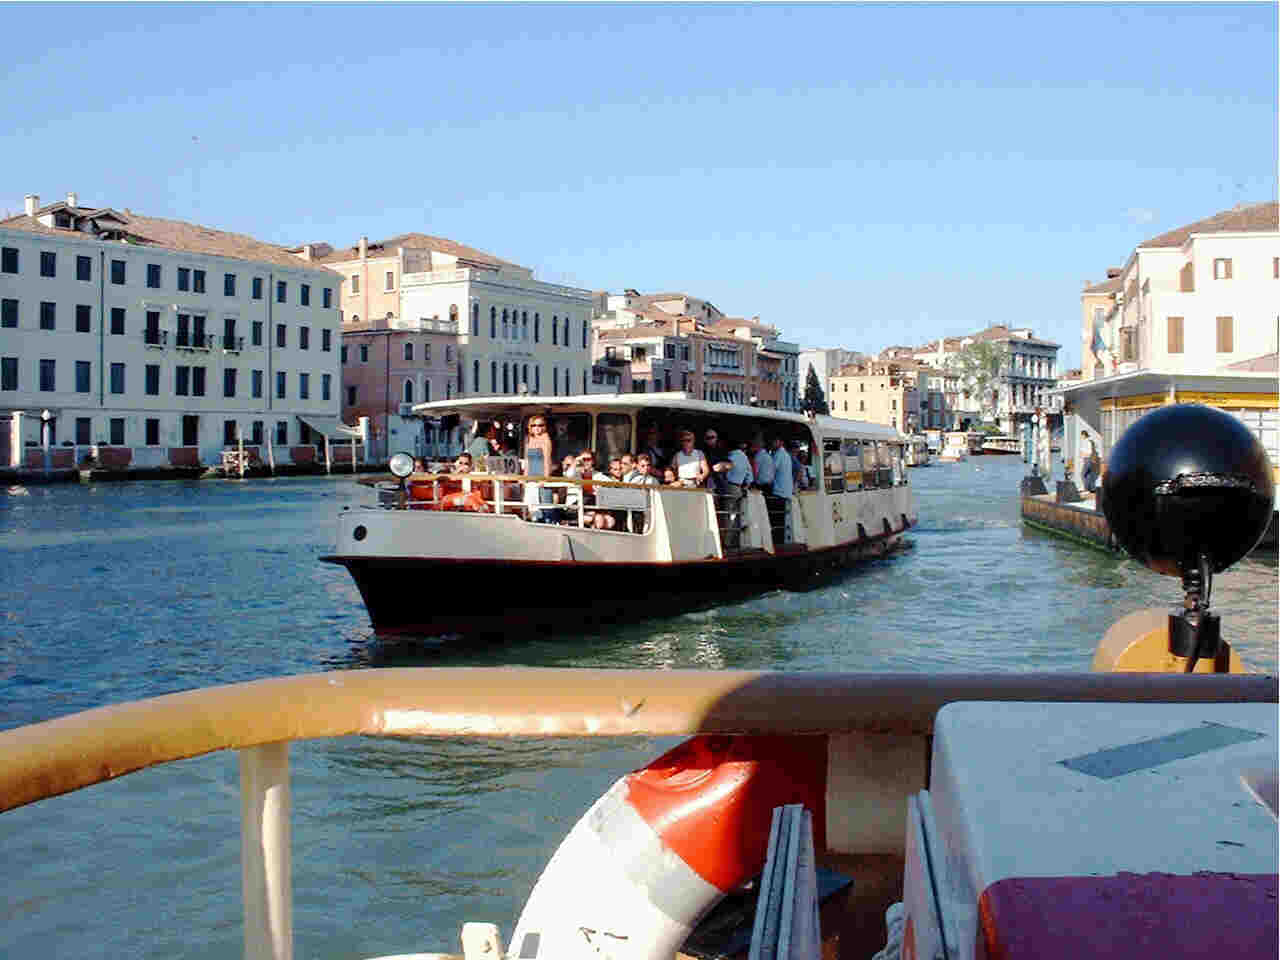 Vaporetto in Venice